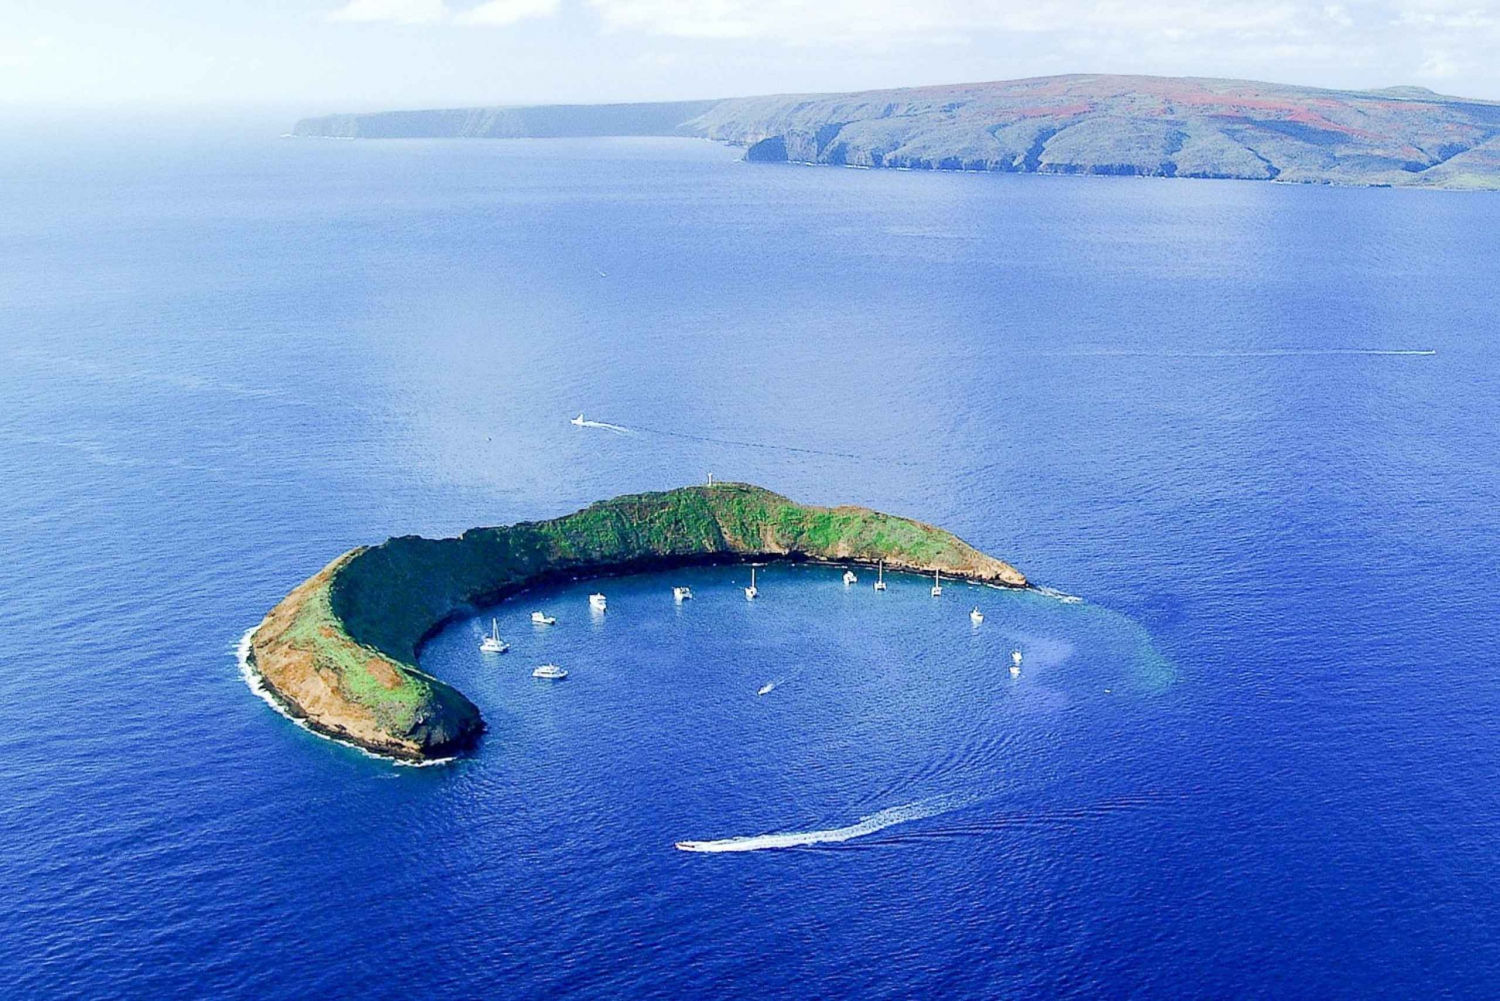 Sul de Maui: Mergulho com snorkel em Molokini e Turtle Town com refeições